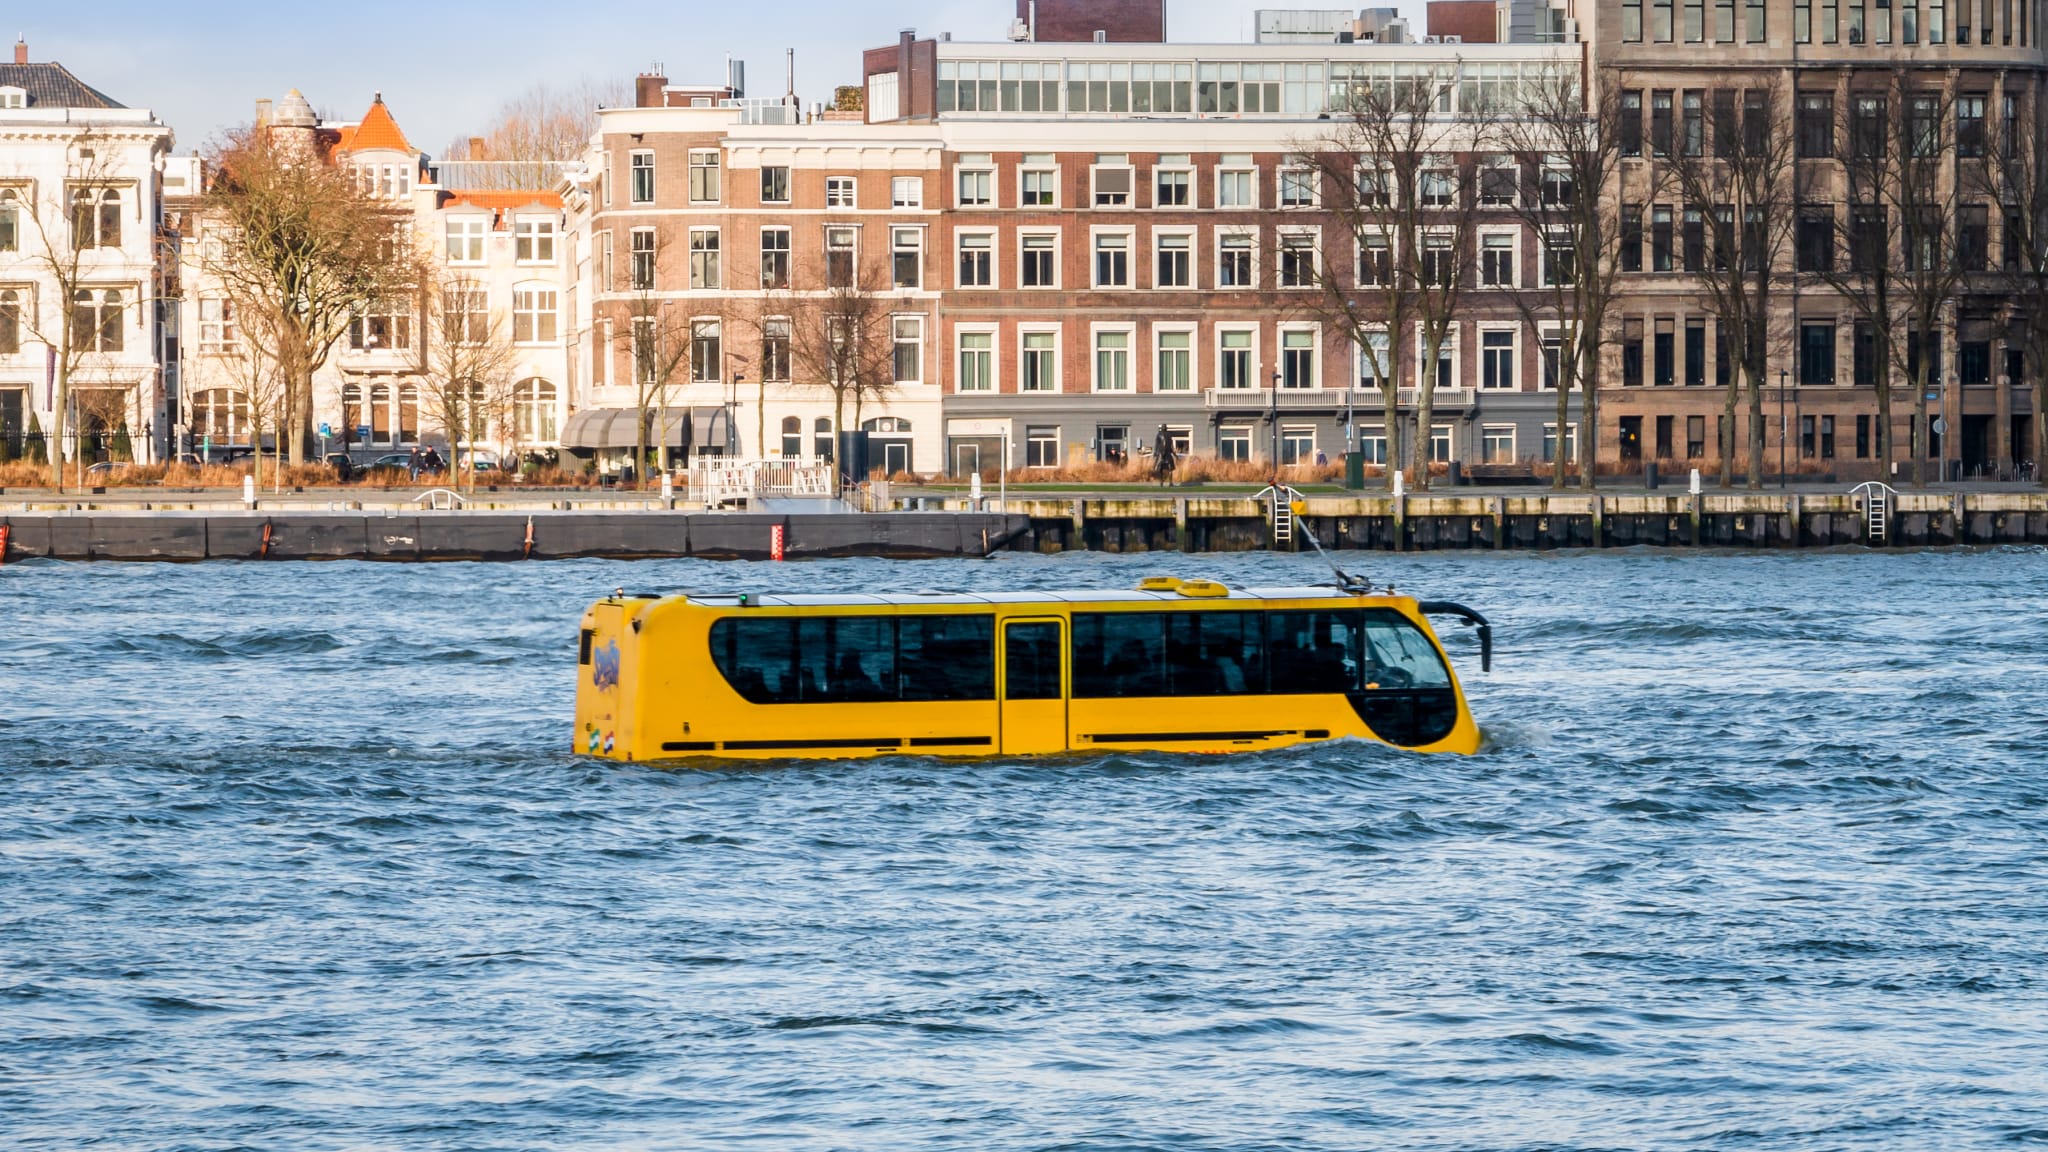 Bus und Schiff in einem bei Splashtours in Rotterdam, Niederlande © Henk Hulshof/iStock / Getty Images Plus via Getty Images